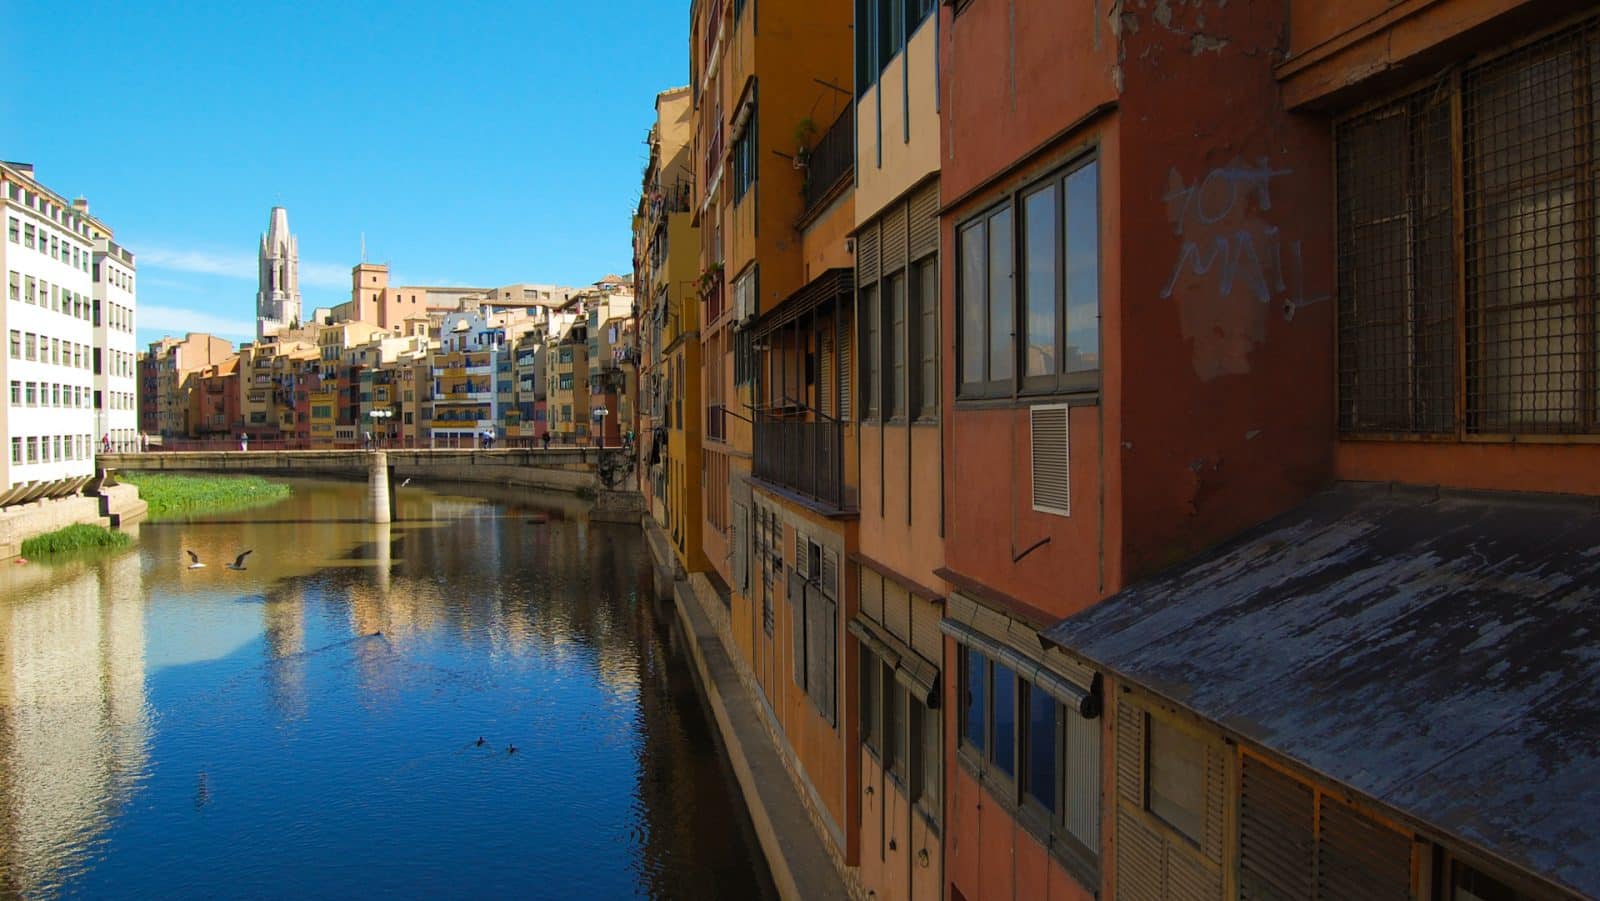 On dormir a Girona: Les millors zones i hotels